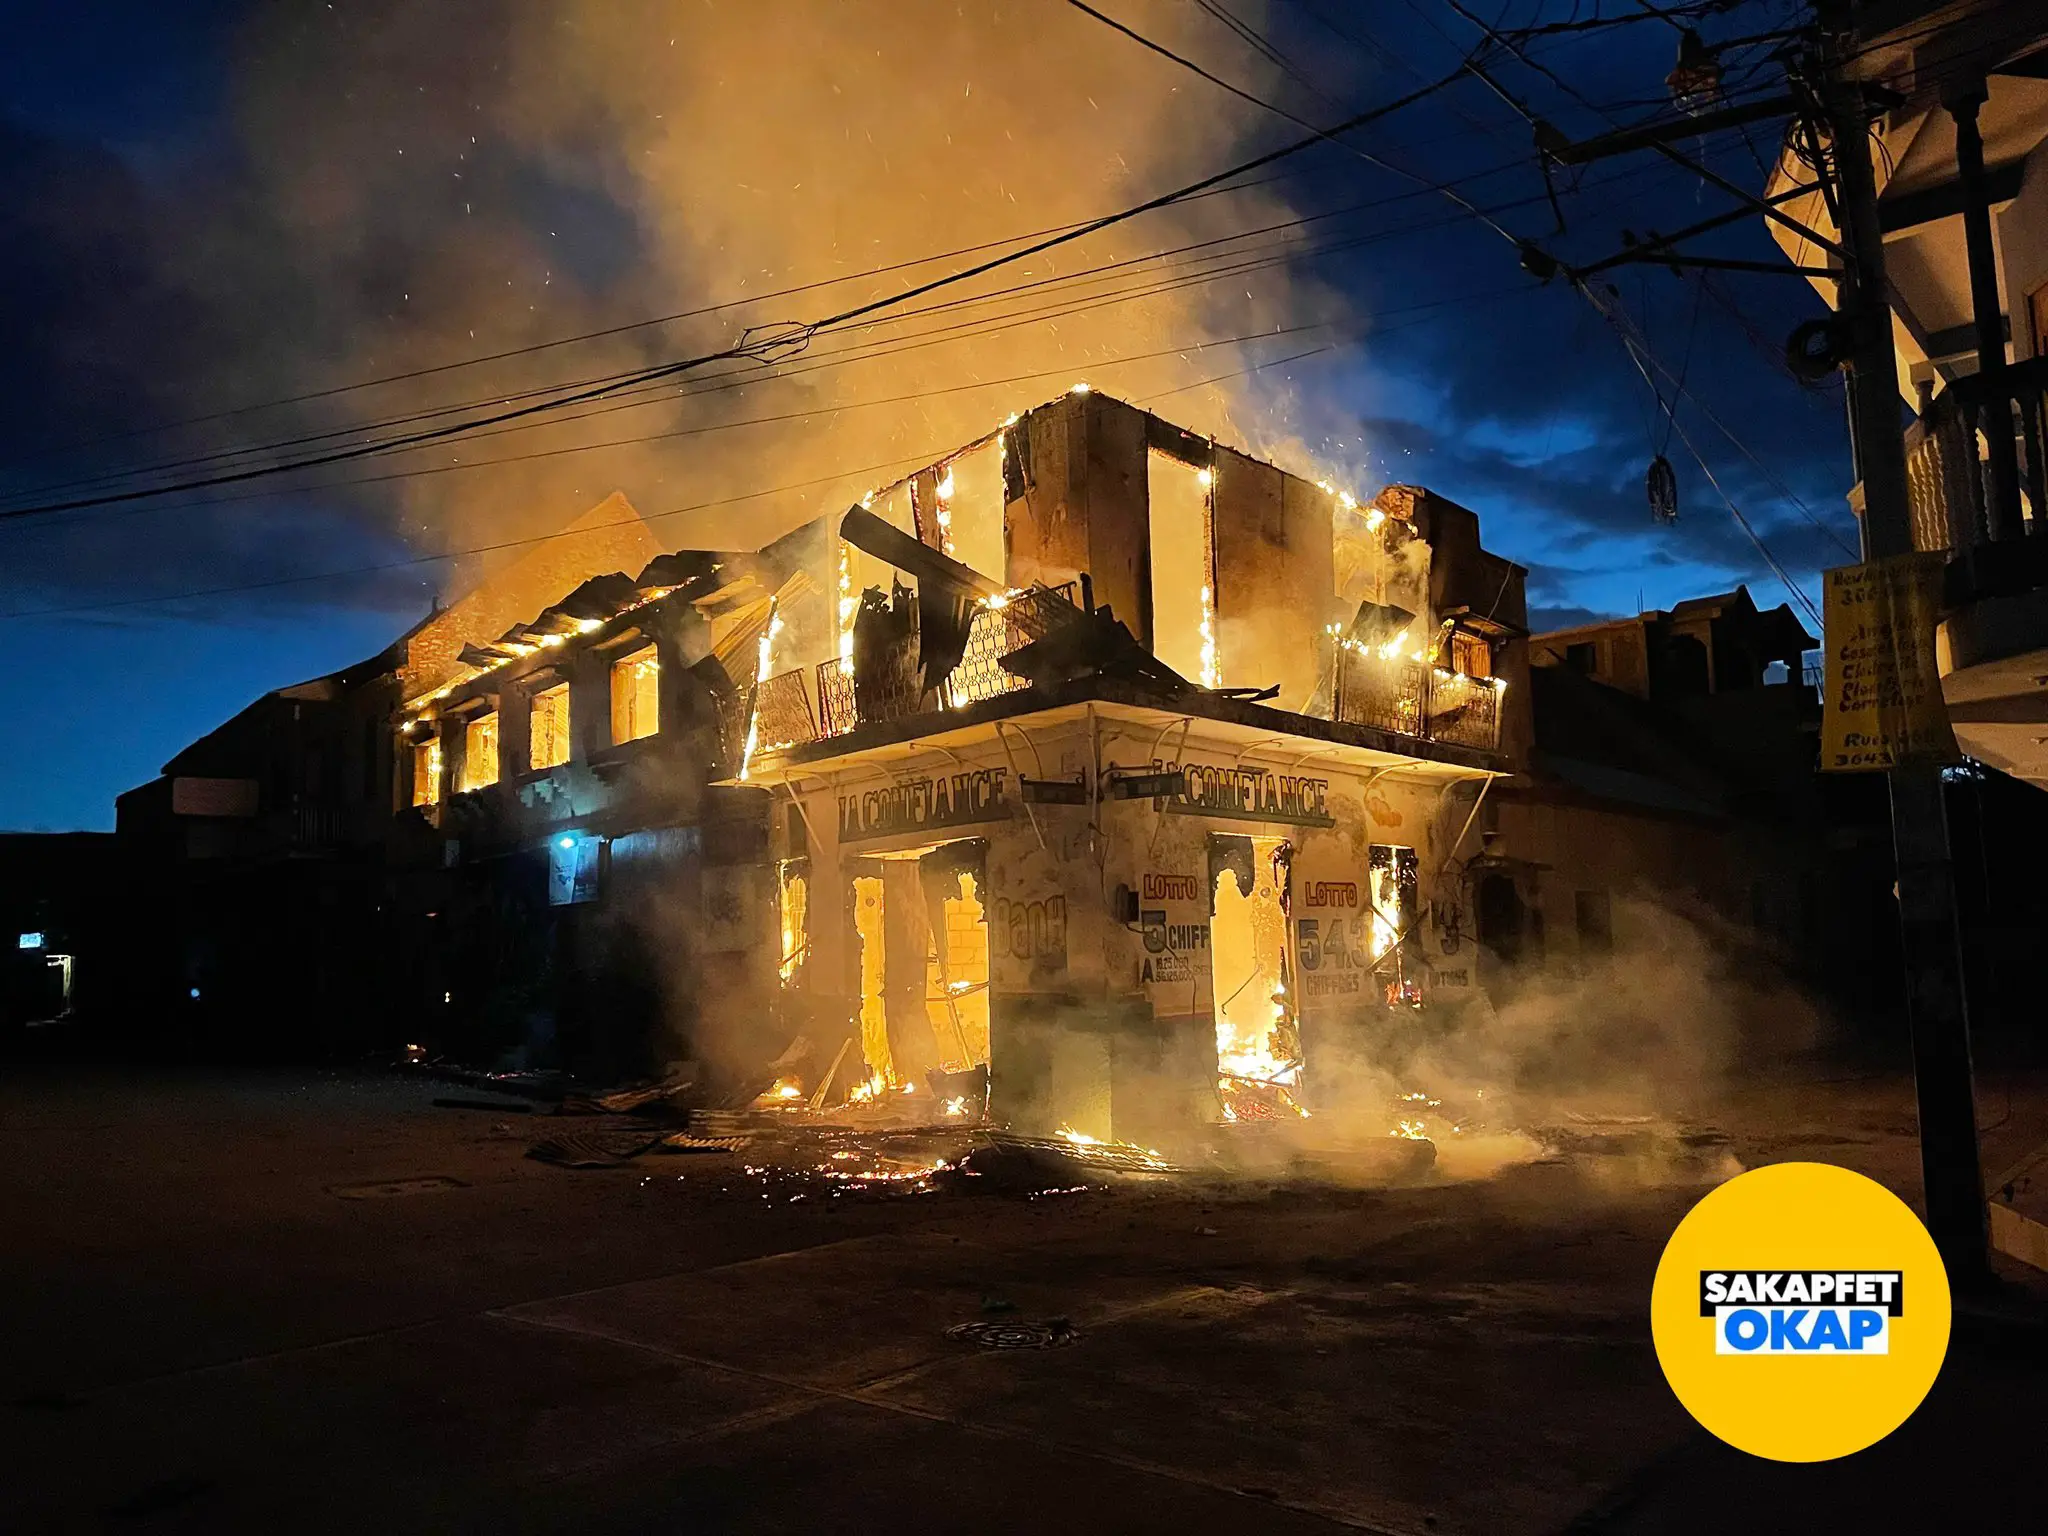 Un incendie a ravagé une ancienne maison logeant plusieurs entreprises au Cap-Haïtien